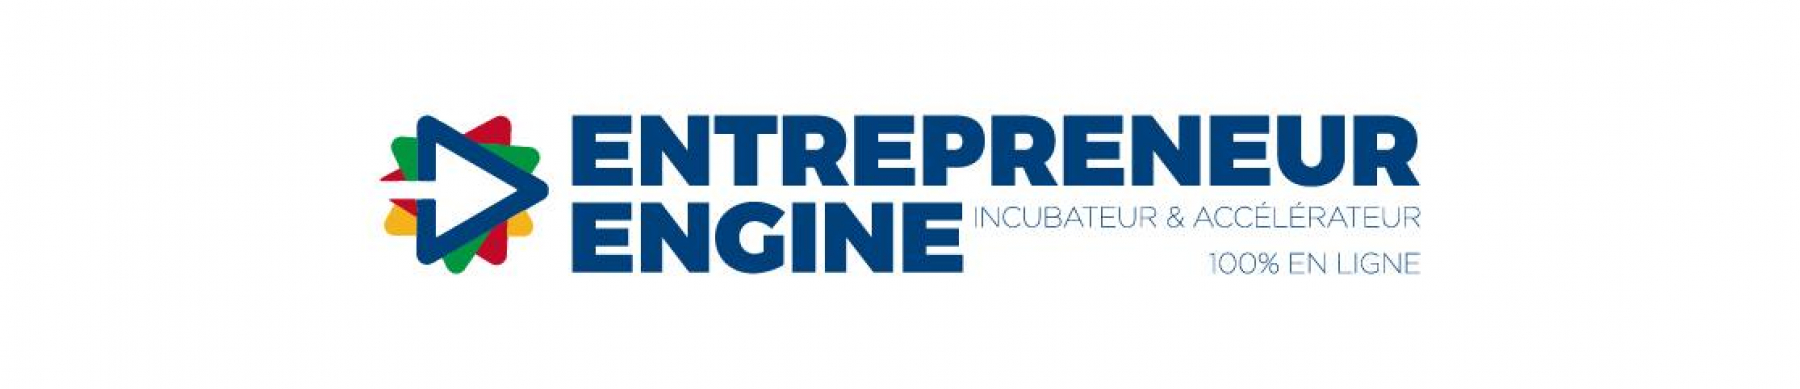 Bannière Entrepreneur Engine 